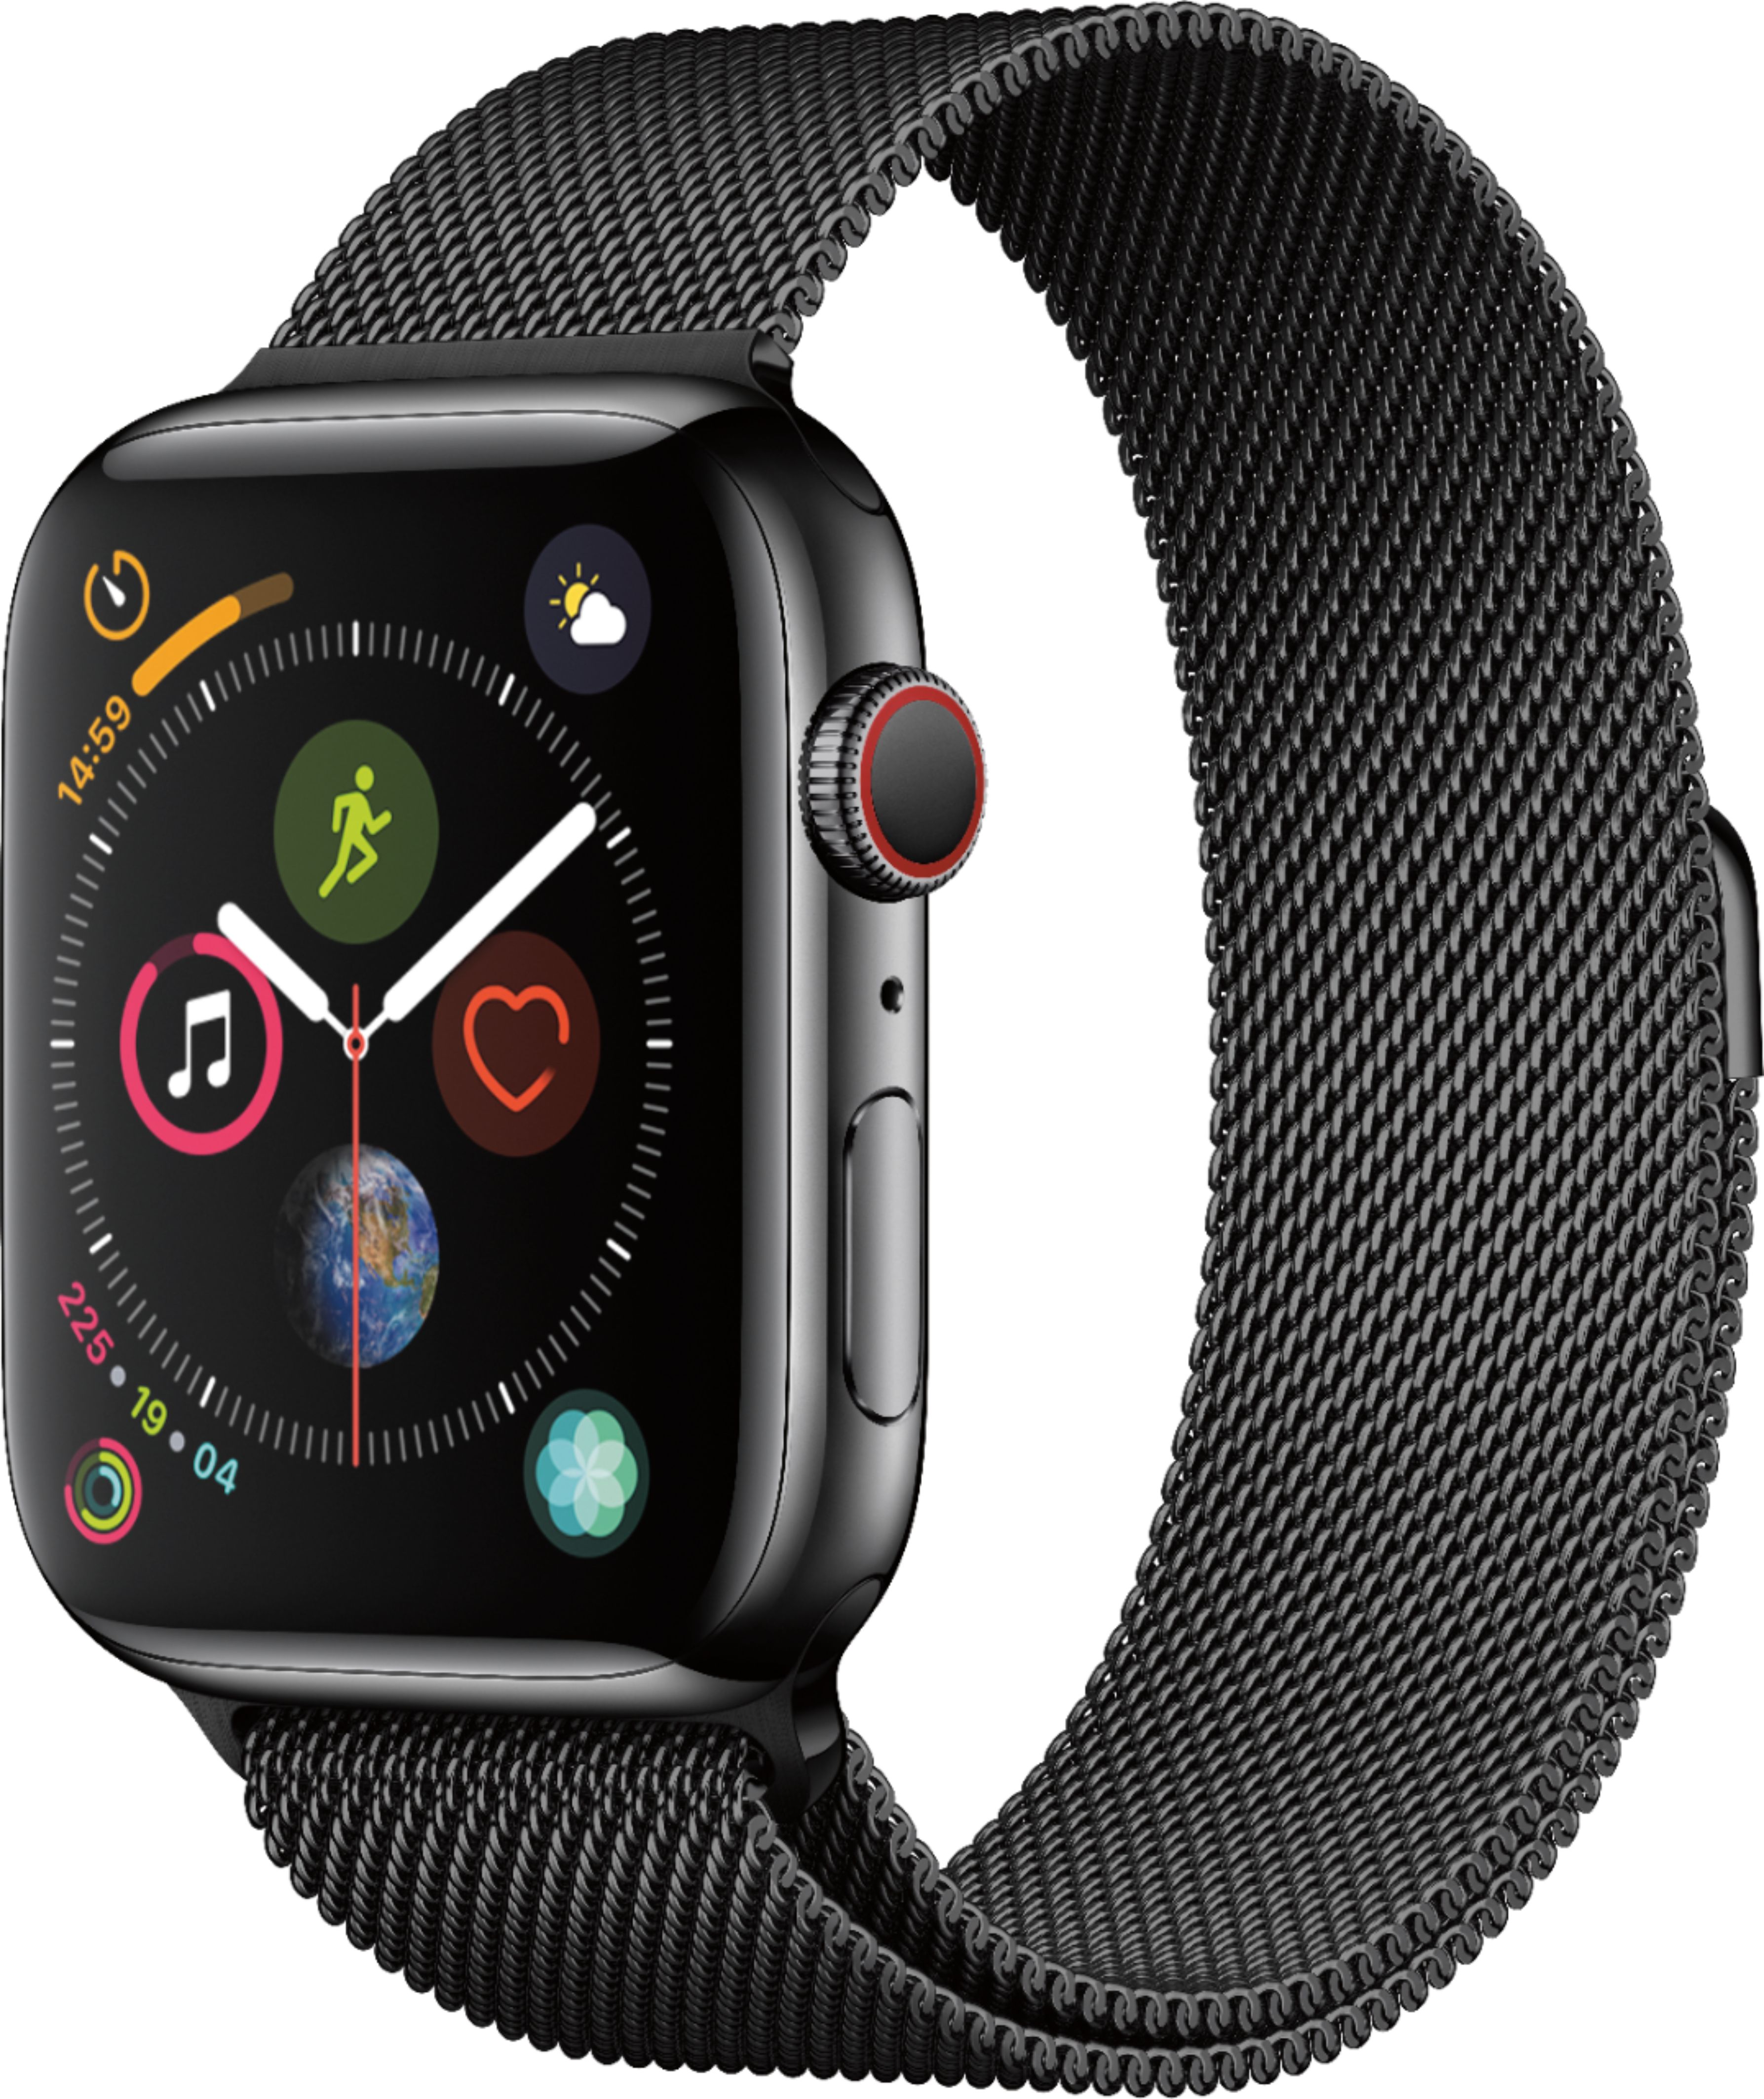 Best Buy: Geek Squad Certified Refurbished Apple Watch Series 4